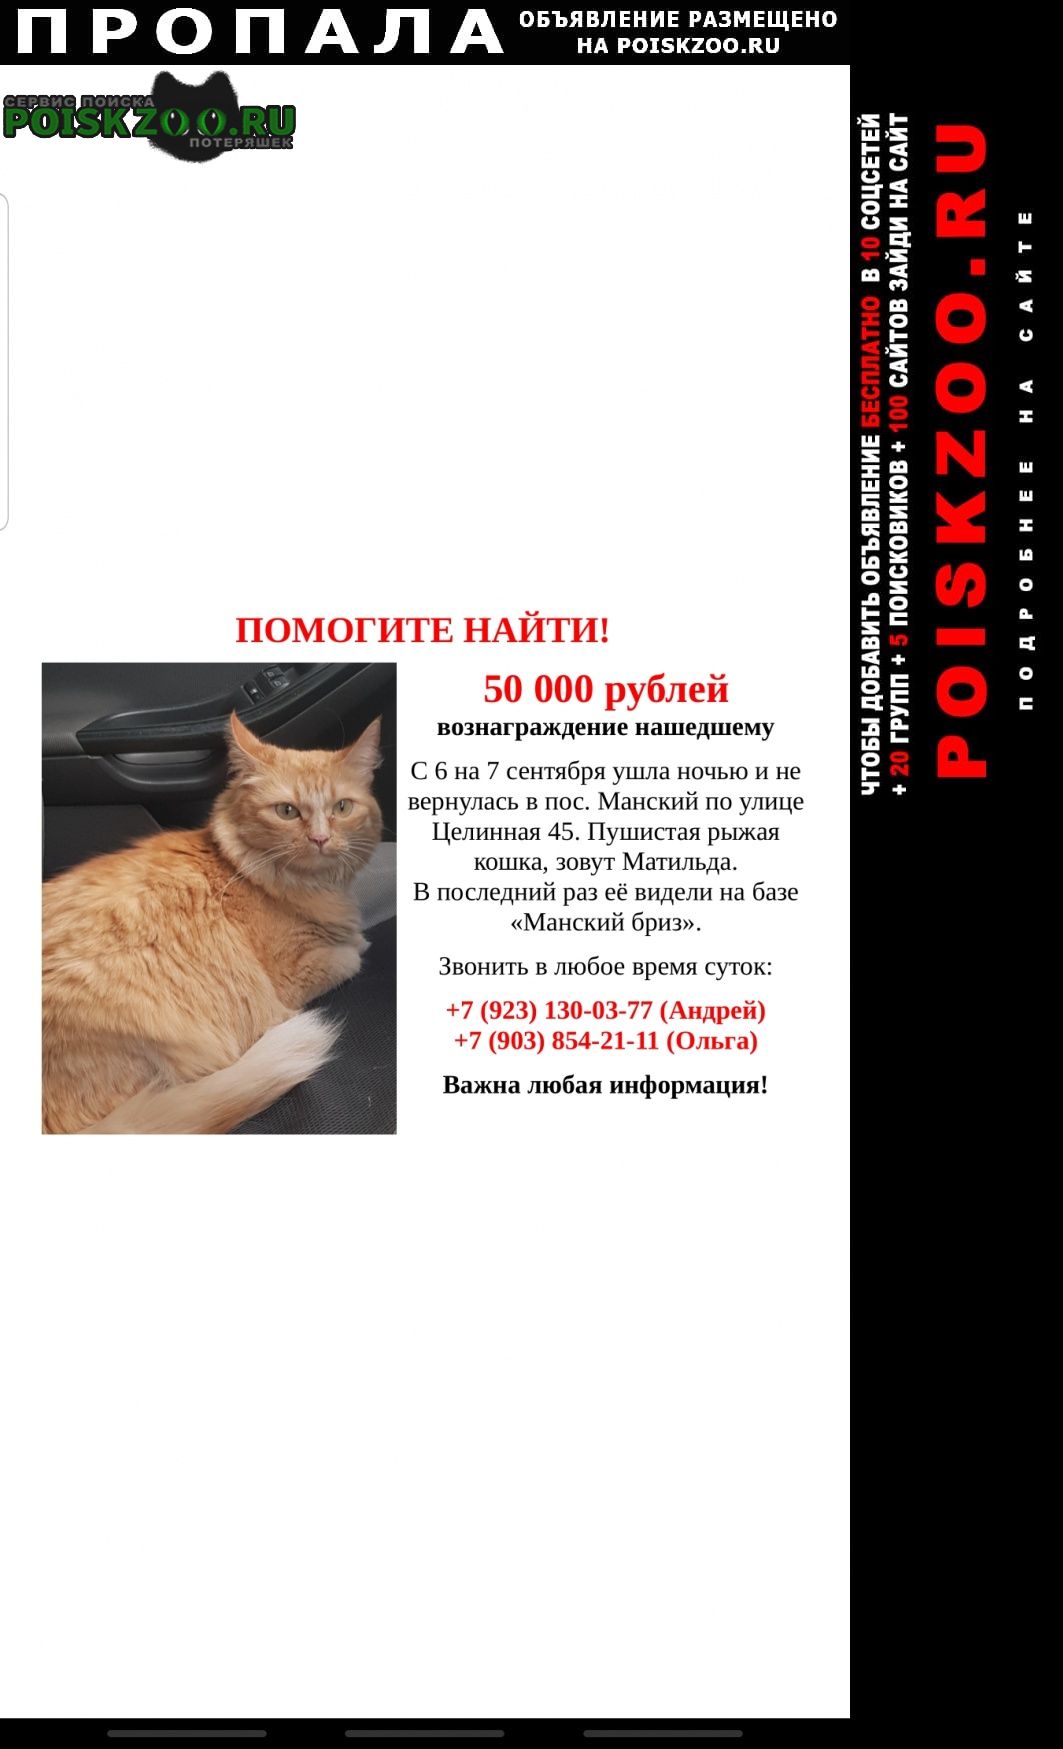 Пропала кошка в посёлке манский Красноярск